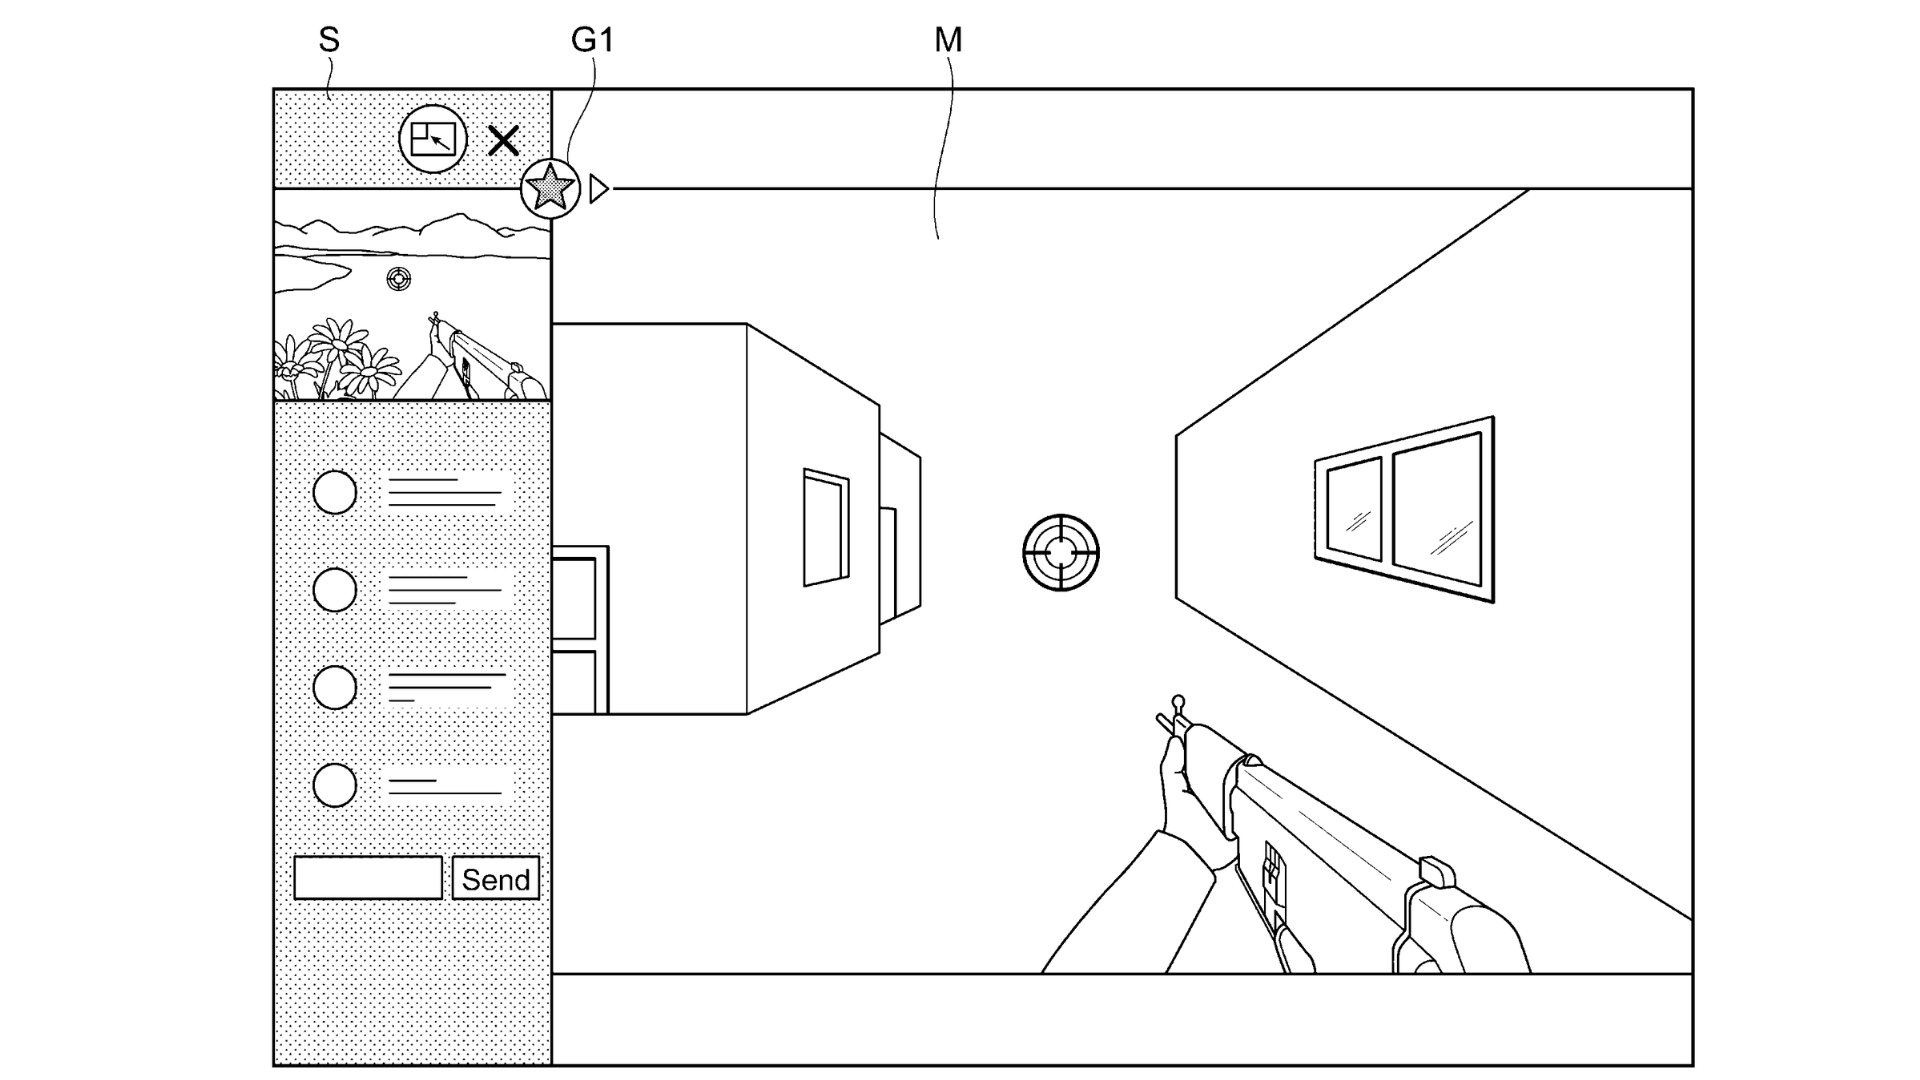 索尼申请画中画专利 疑为PS5游戏提供攻略便利